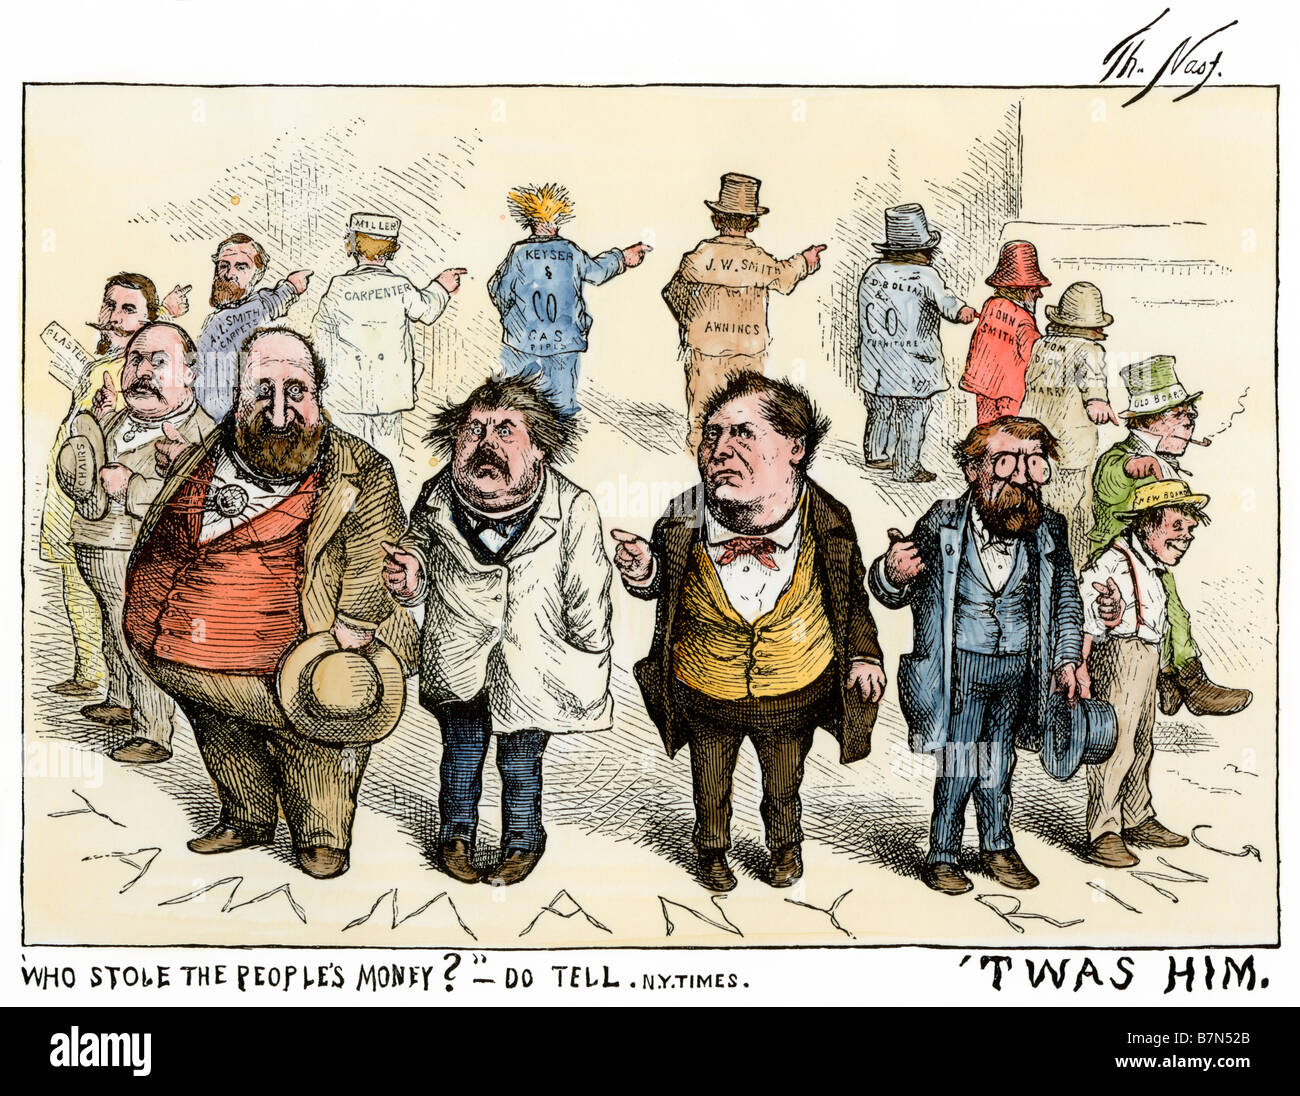 ', Die gestohlen haben, das Geld der Leute? Es war ihm." Thomas Nast Cartoon über Tammany Hall Korruption, 1871. Hand - farbige Holzschnitt Stockfoto